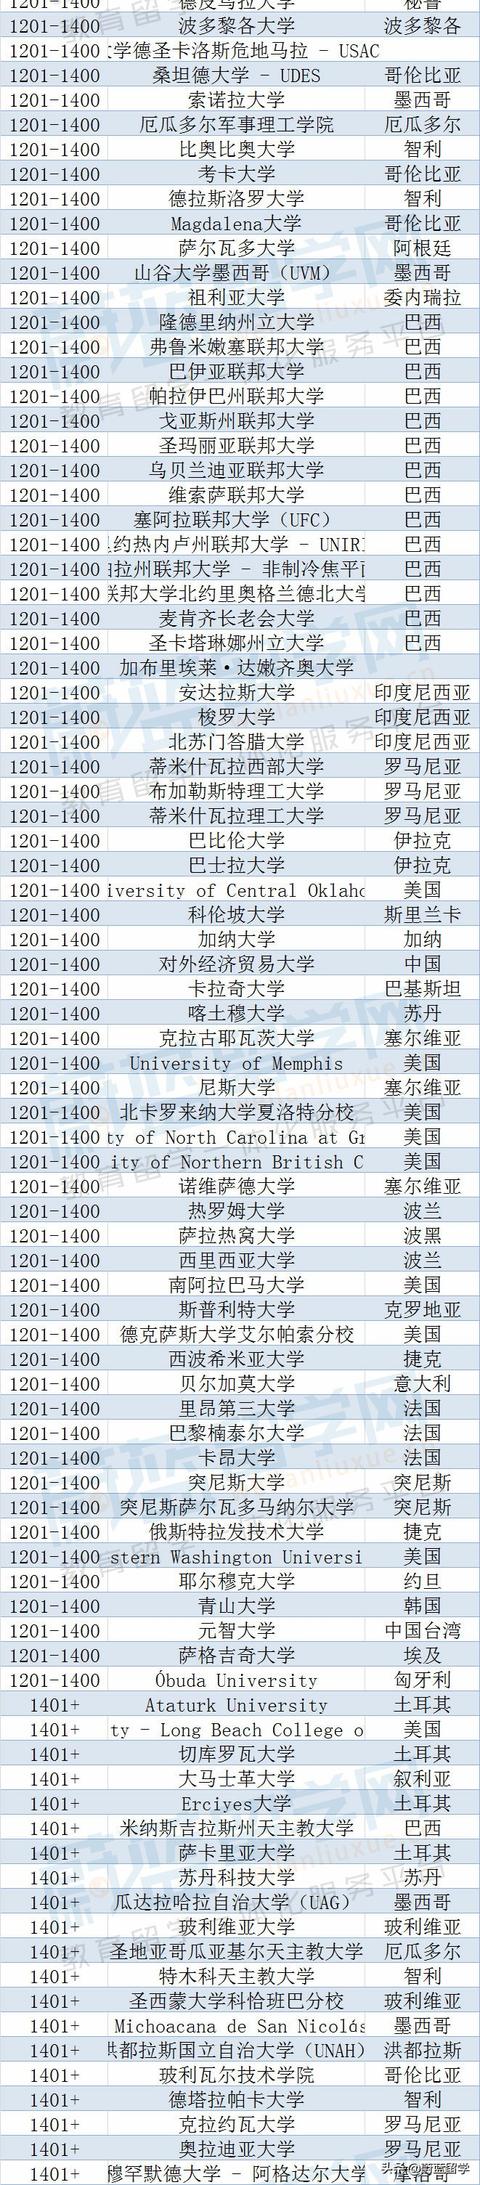 世界排名前100的大学食品科学(日本大学2023qs排名)